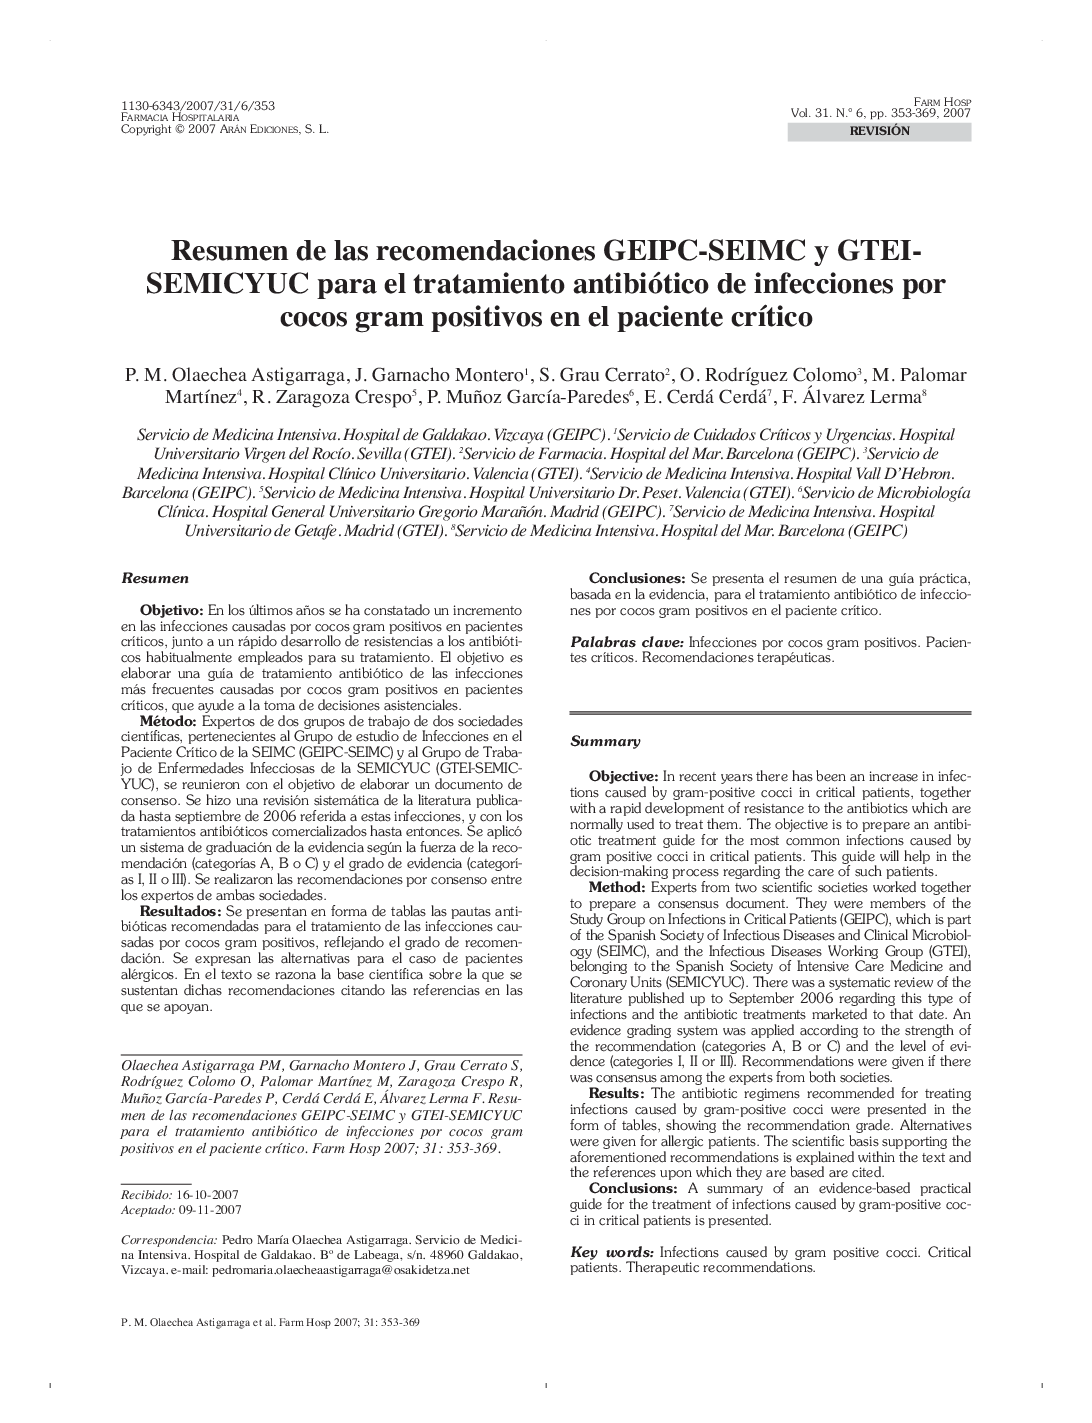 Resumen de las recomendaciones GEIPC-SEIMC y GTEI-SEMICYUC para el tratamiento antibiótico de infecciones por cocos gram positivos en el paciente crÃ­tico